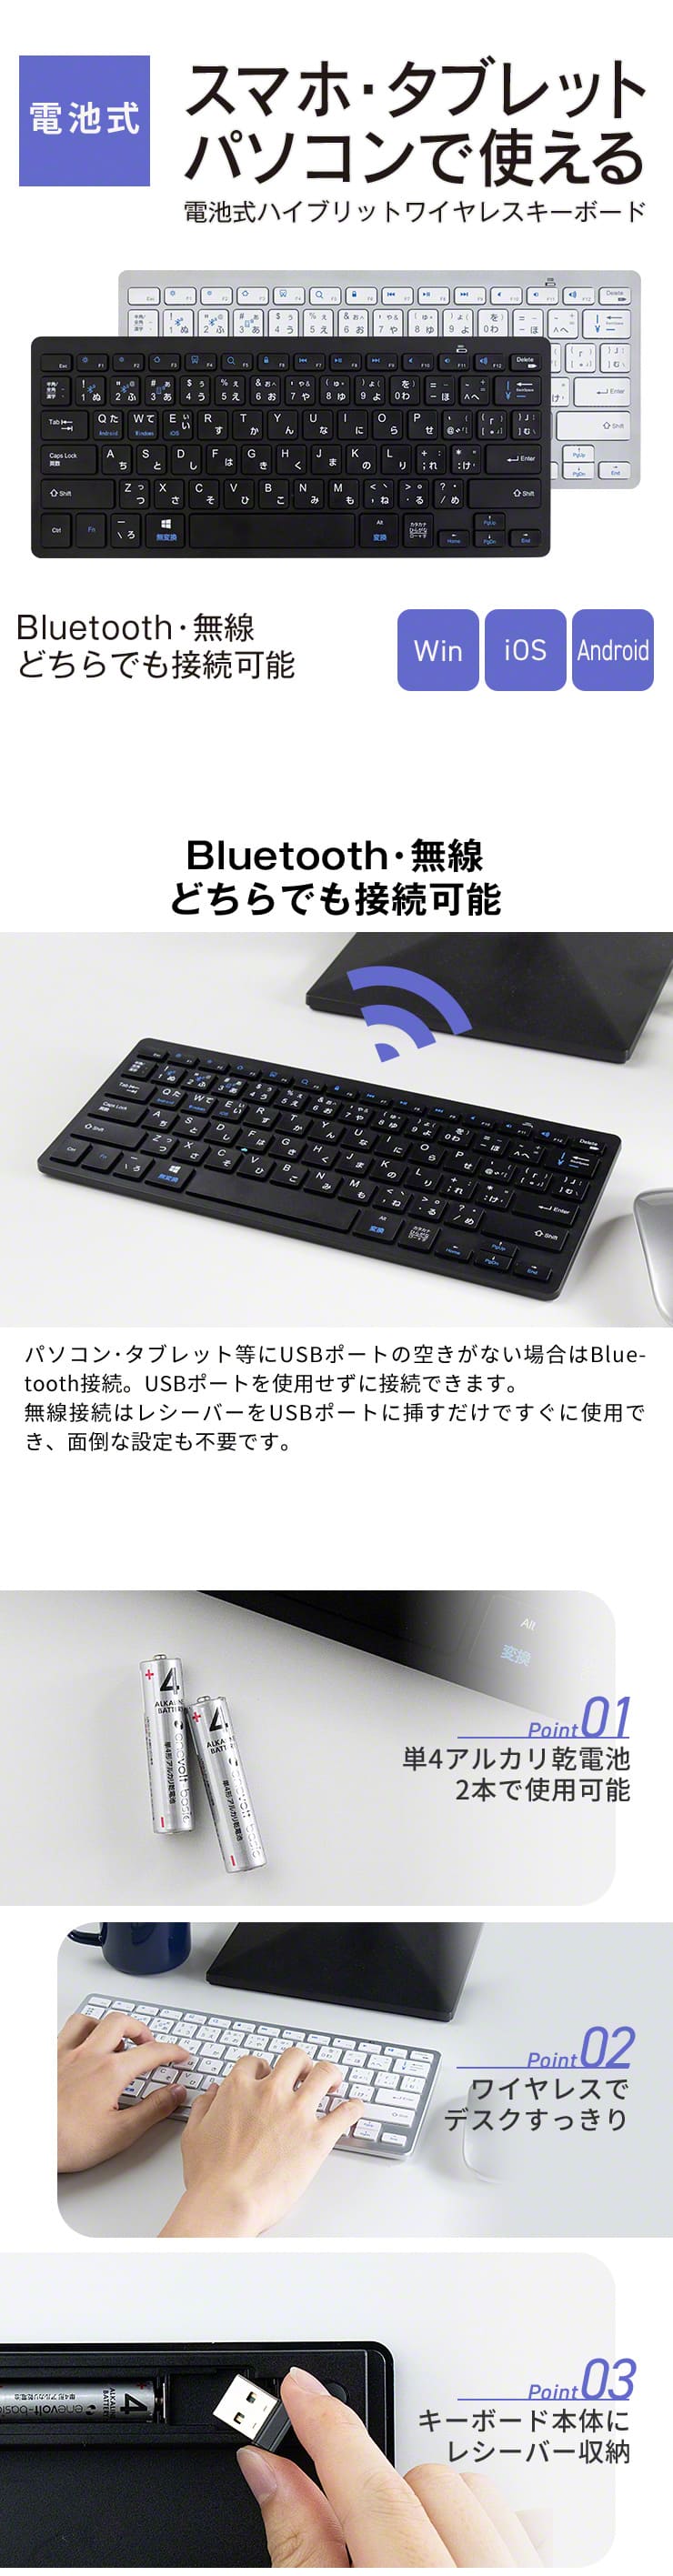 スマホ タブレット パソコン キーボード 電池式 薄型 軽量 Bluetooth 無線